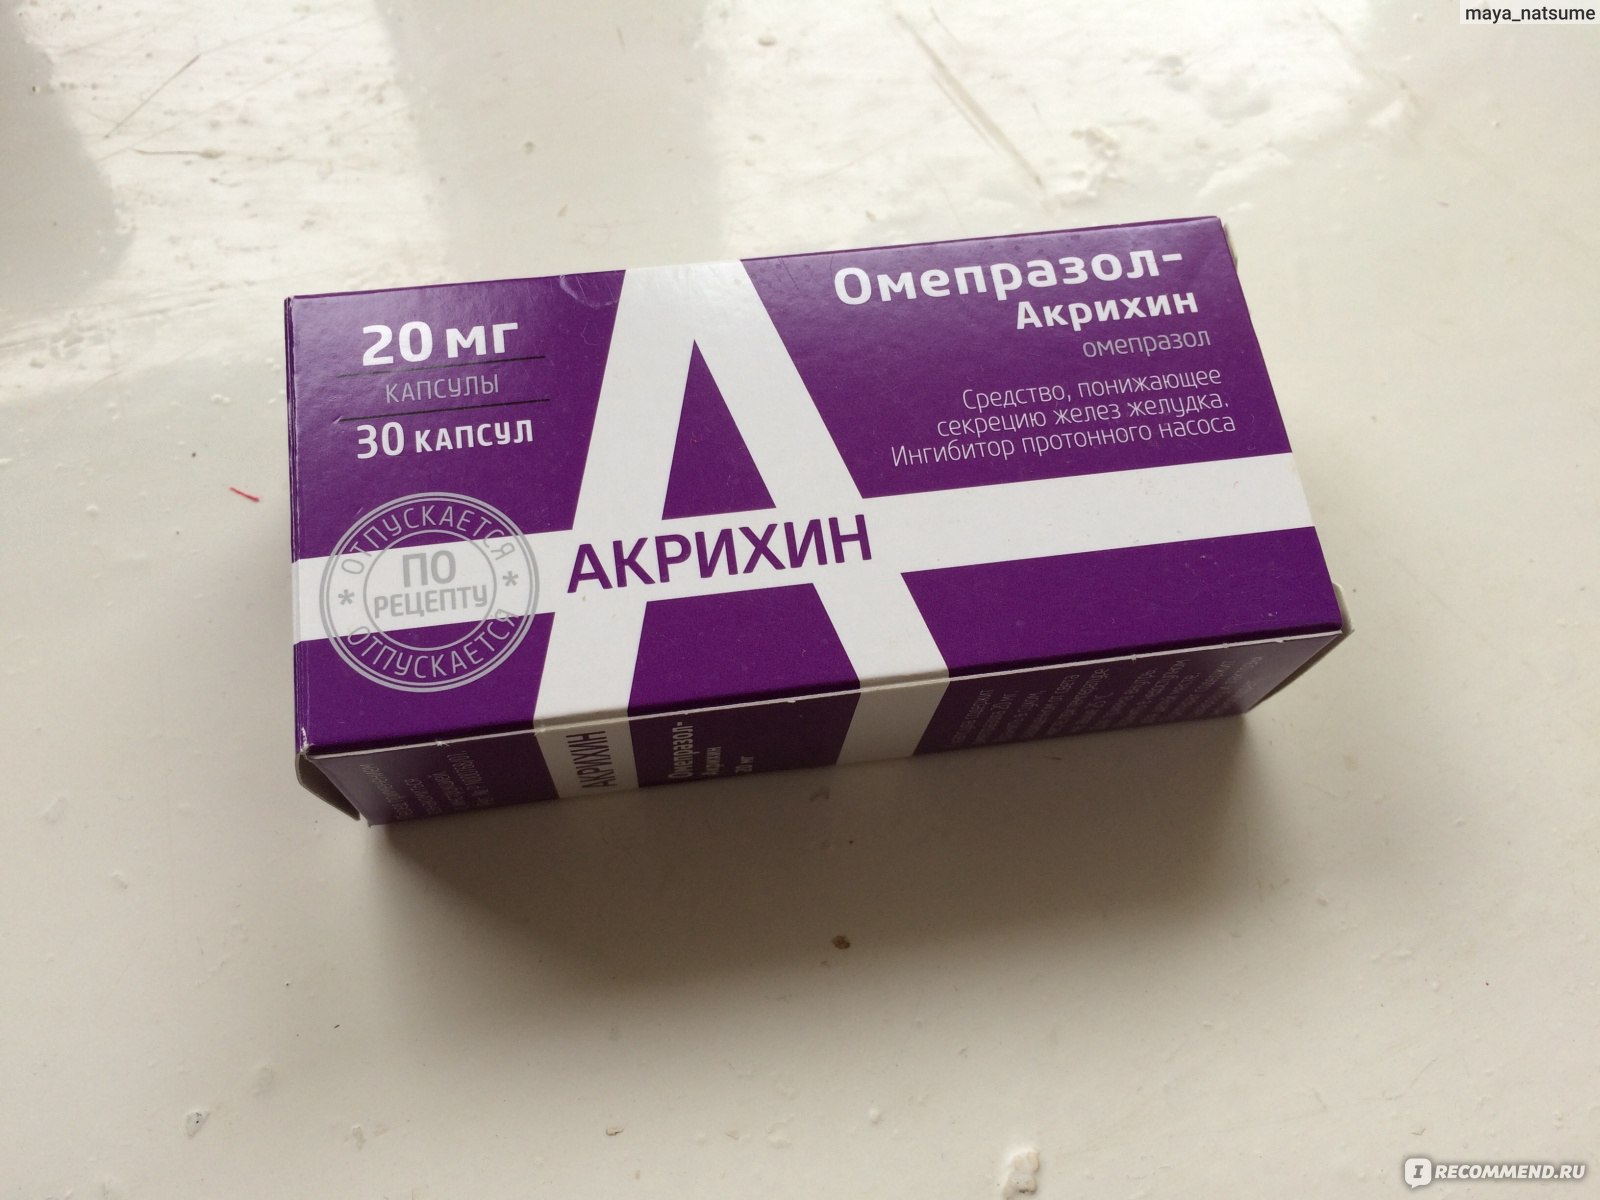 Таблетки Акрихин Омепразол - «Спасение желудка» | отзывы